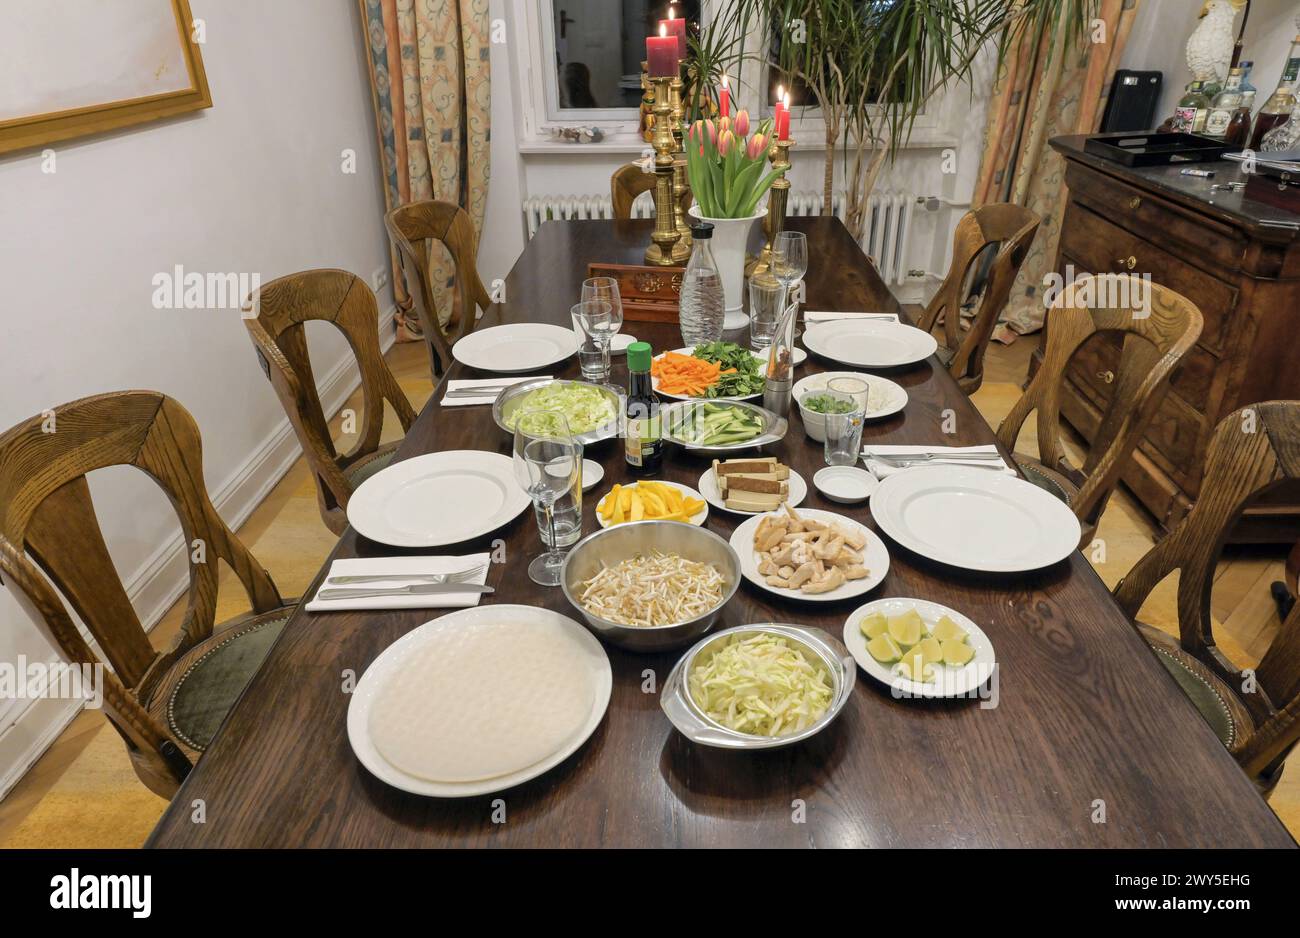 Gedeckter Tisch im Esszimmer mit Asiatischem Essen Foto Stock